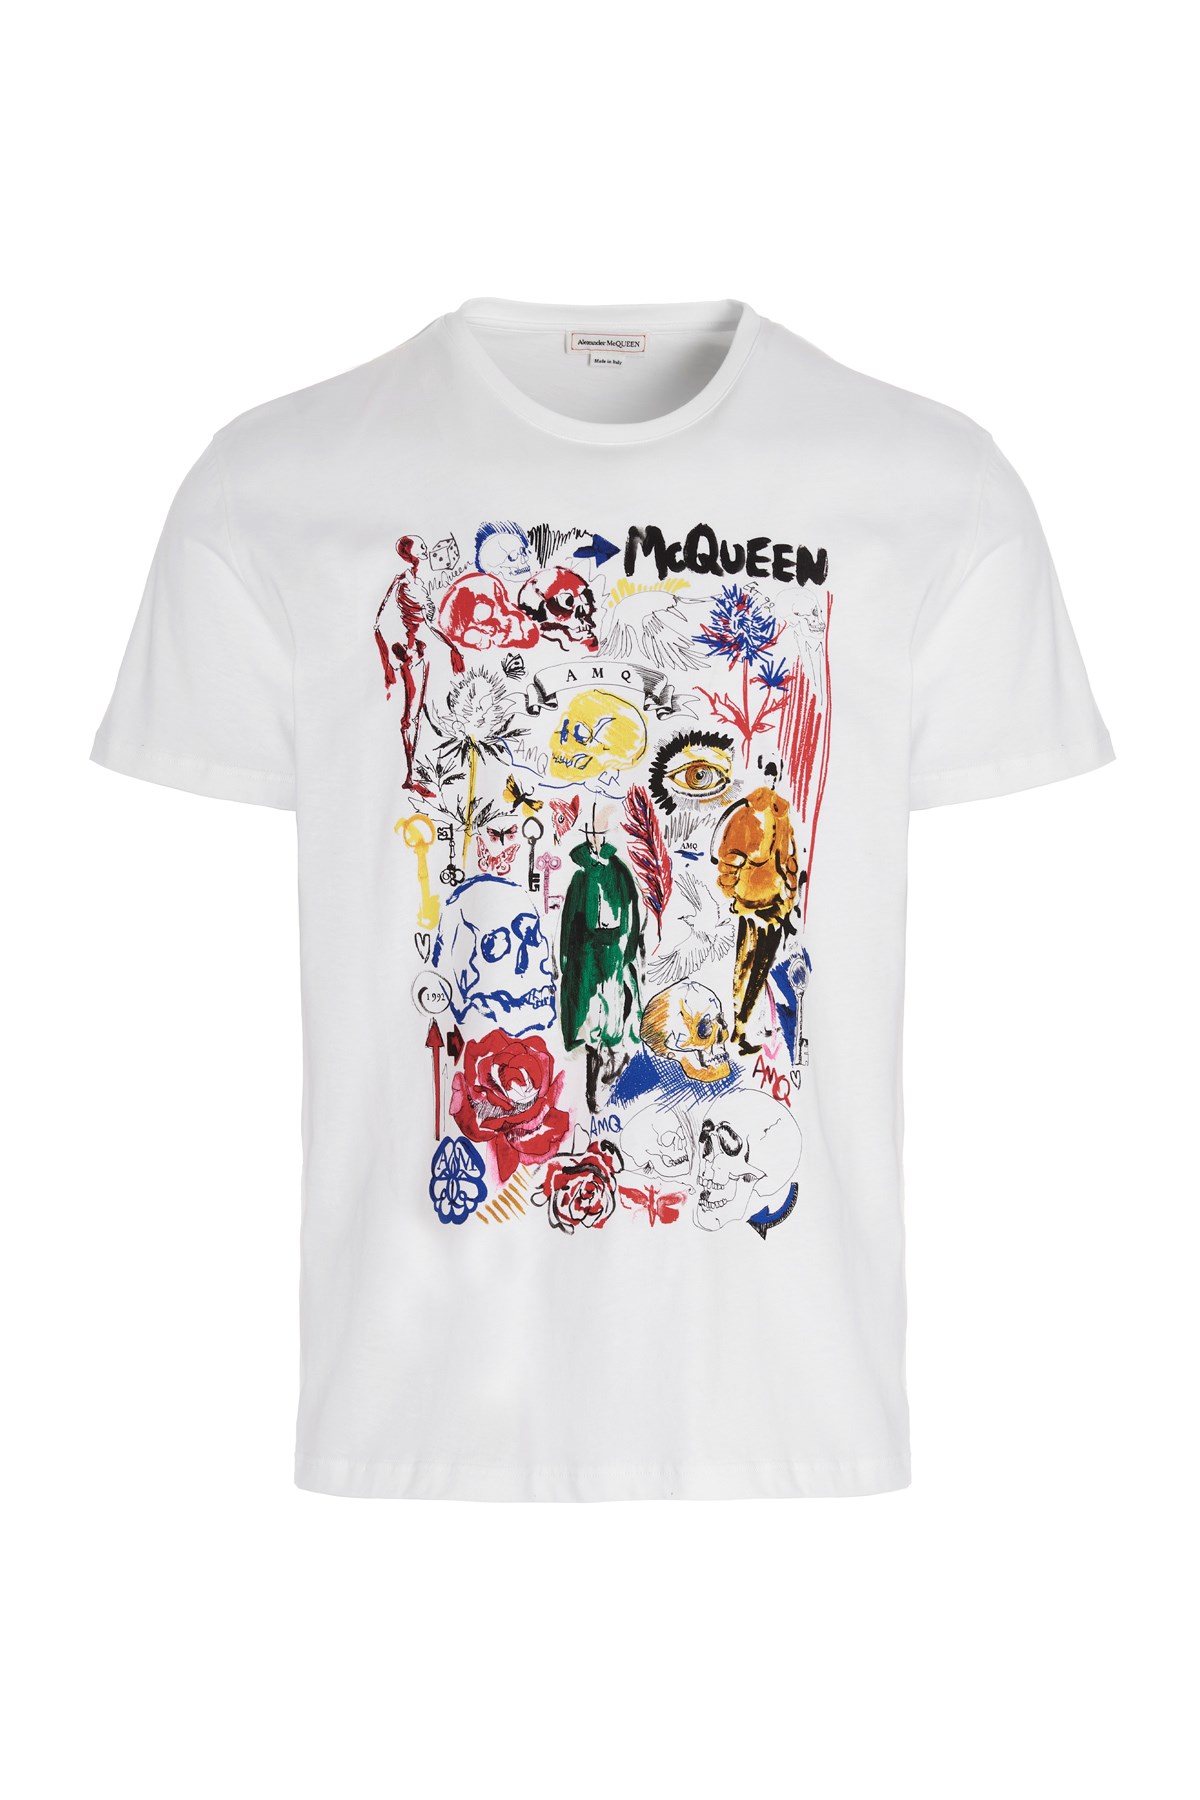 ALEXANDER MCQUEEN Printed T-Shirt